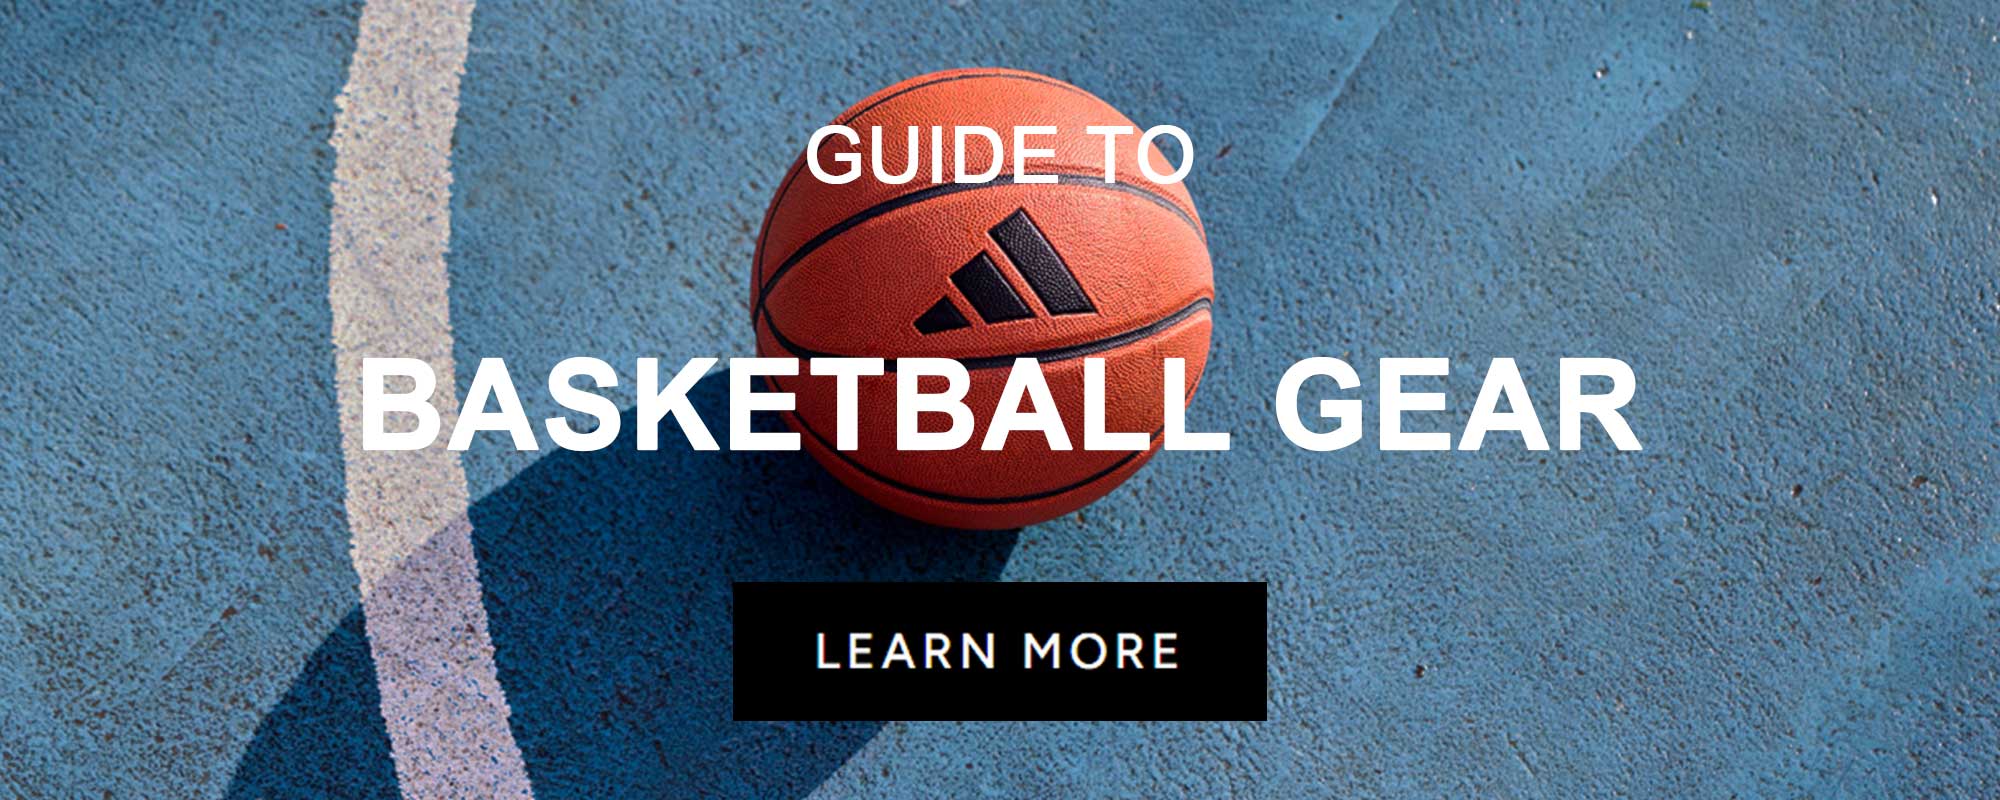 GUIDES_SPORT_BasketballGear.jpg